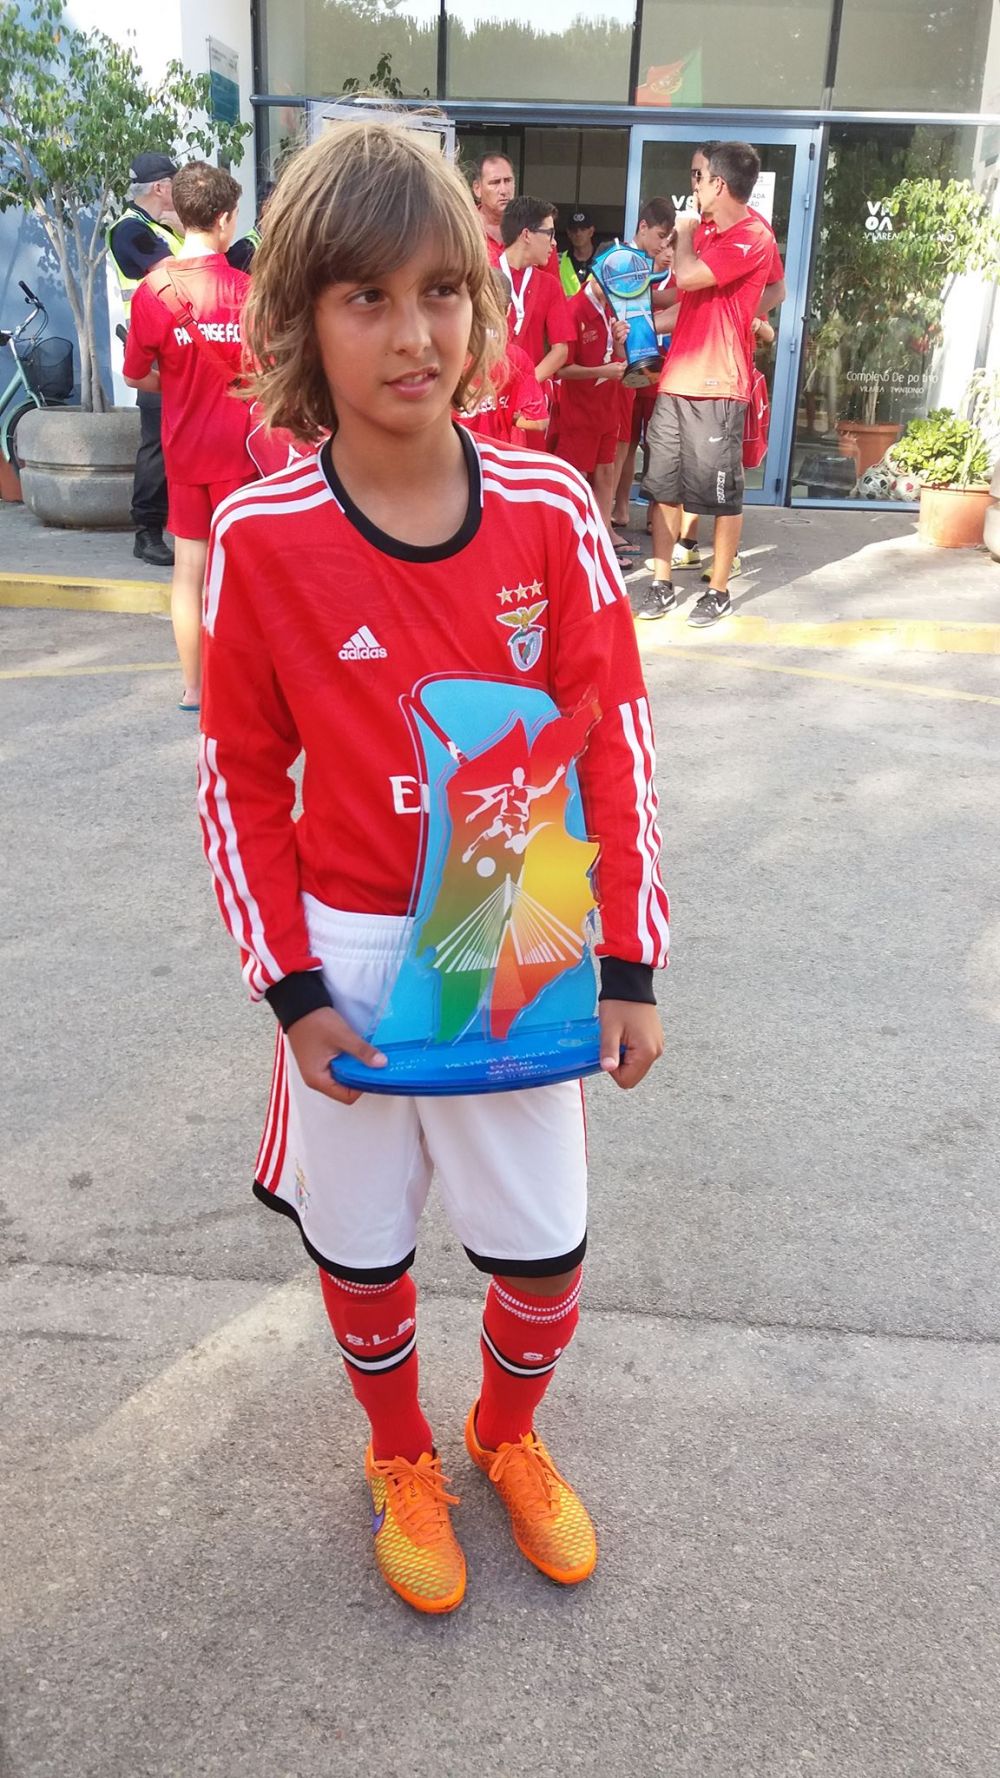 "Aveam 7 ani când m-a luat Benfica!" Povestea lui Miguel Constantinescu, românul care visează să întâlnească trei mari fotbaliști ai lumii_42